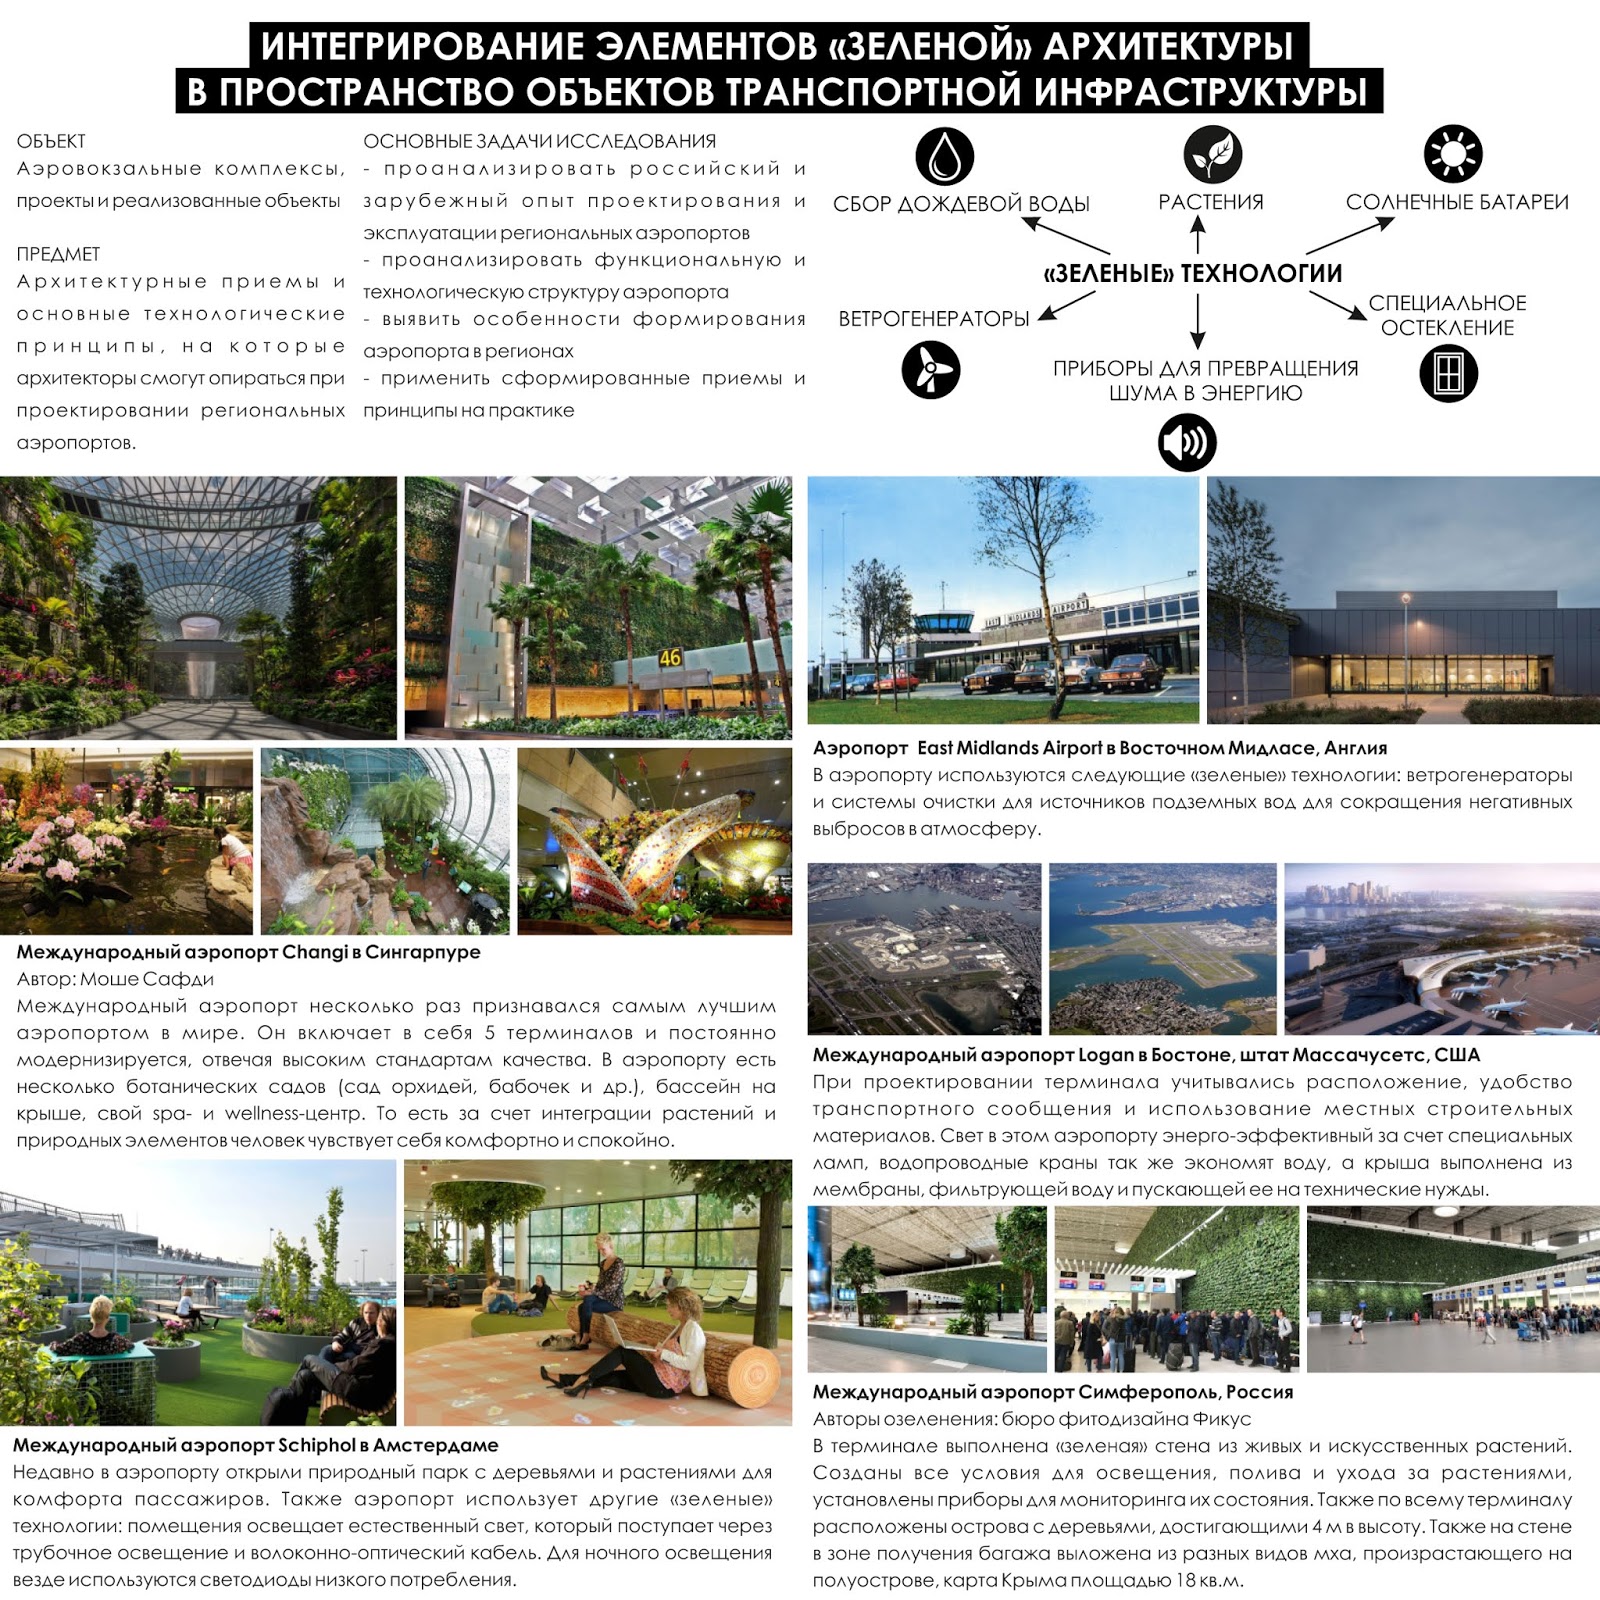 Доклад: Архитектурная среда планеты Харбин